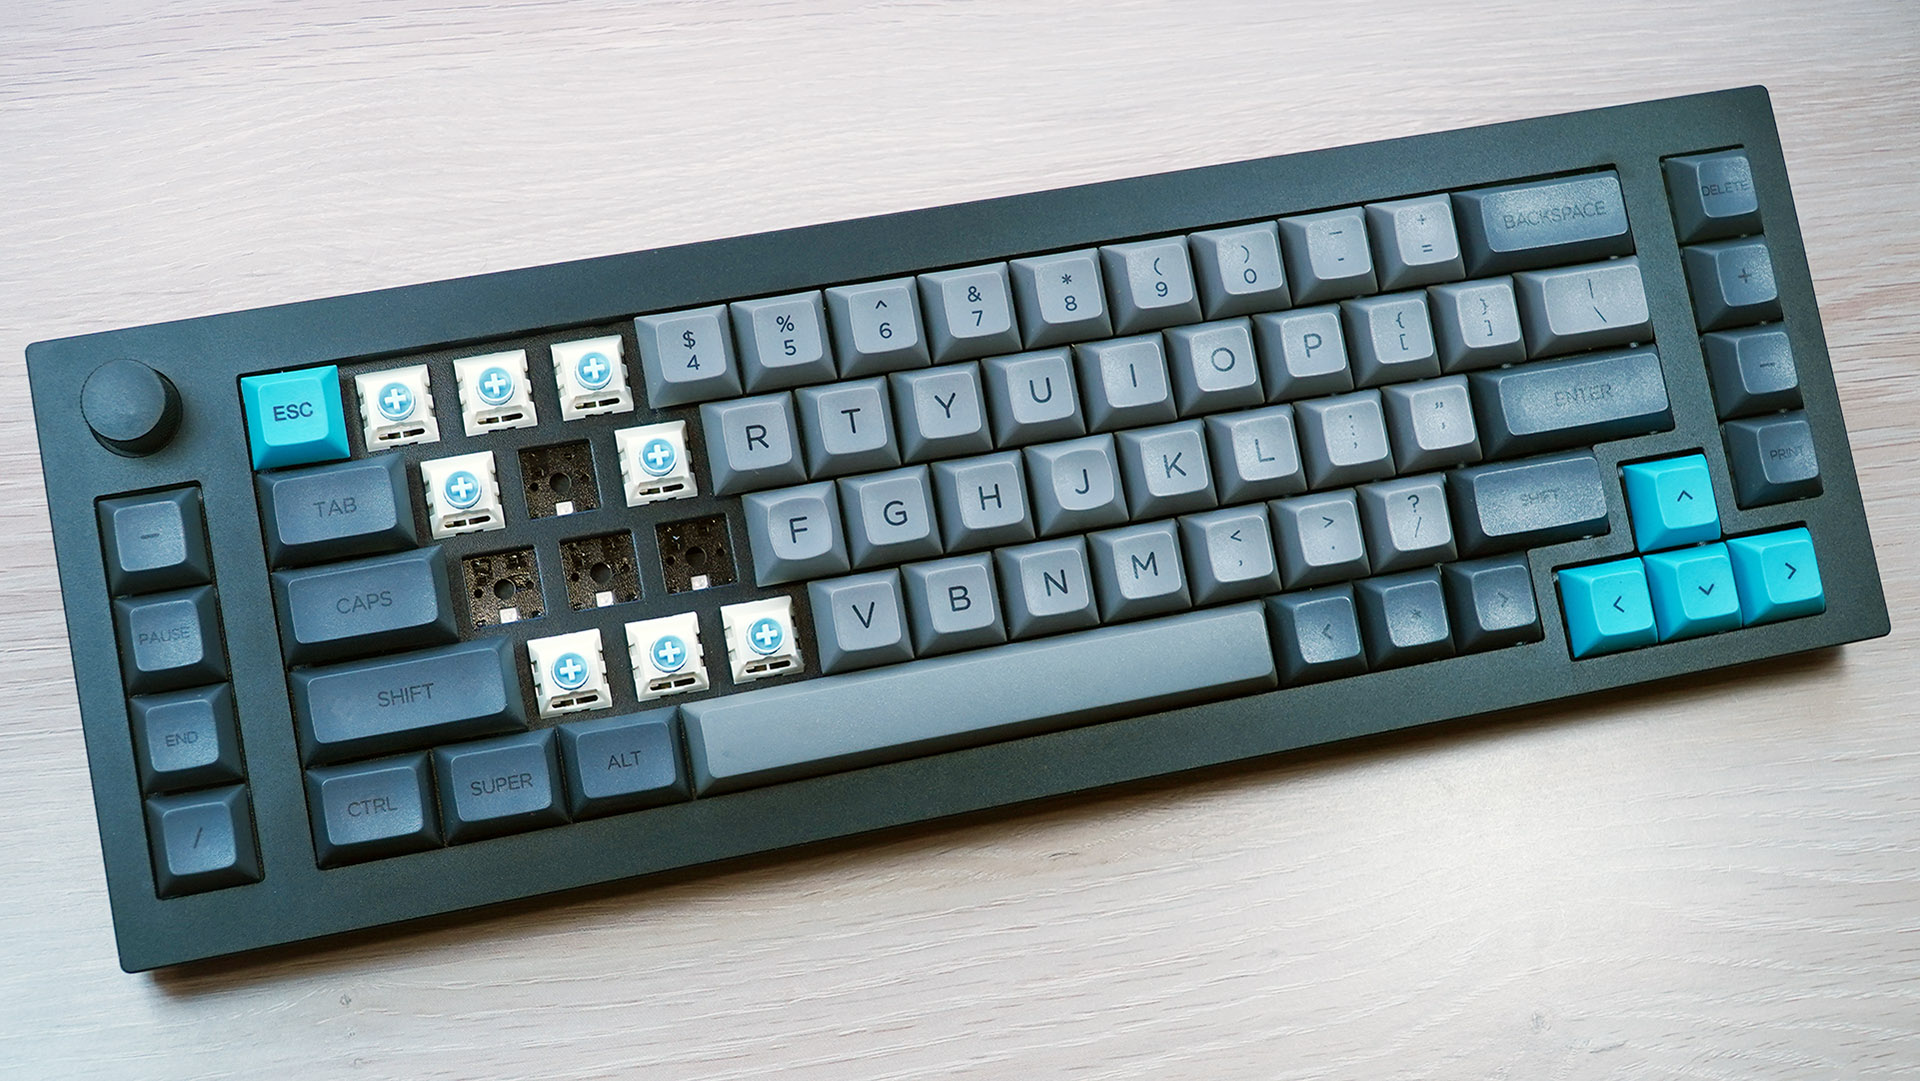 keychron Q65 keyboard